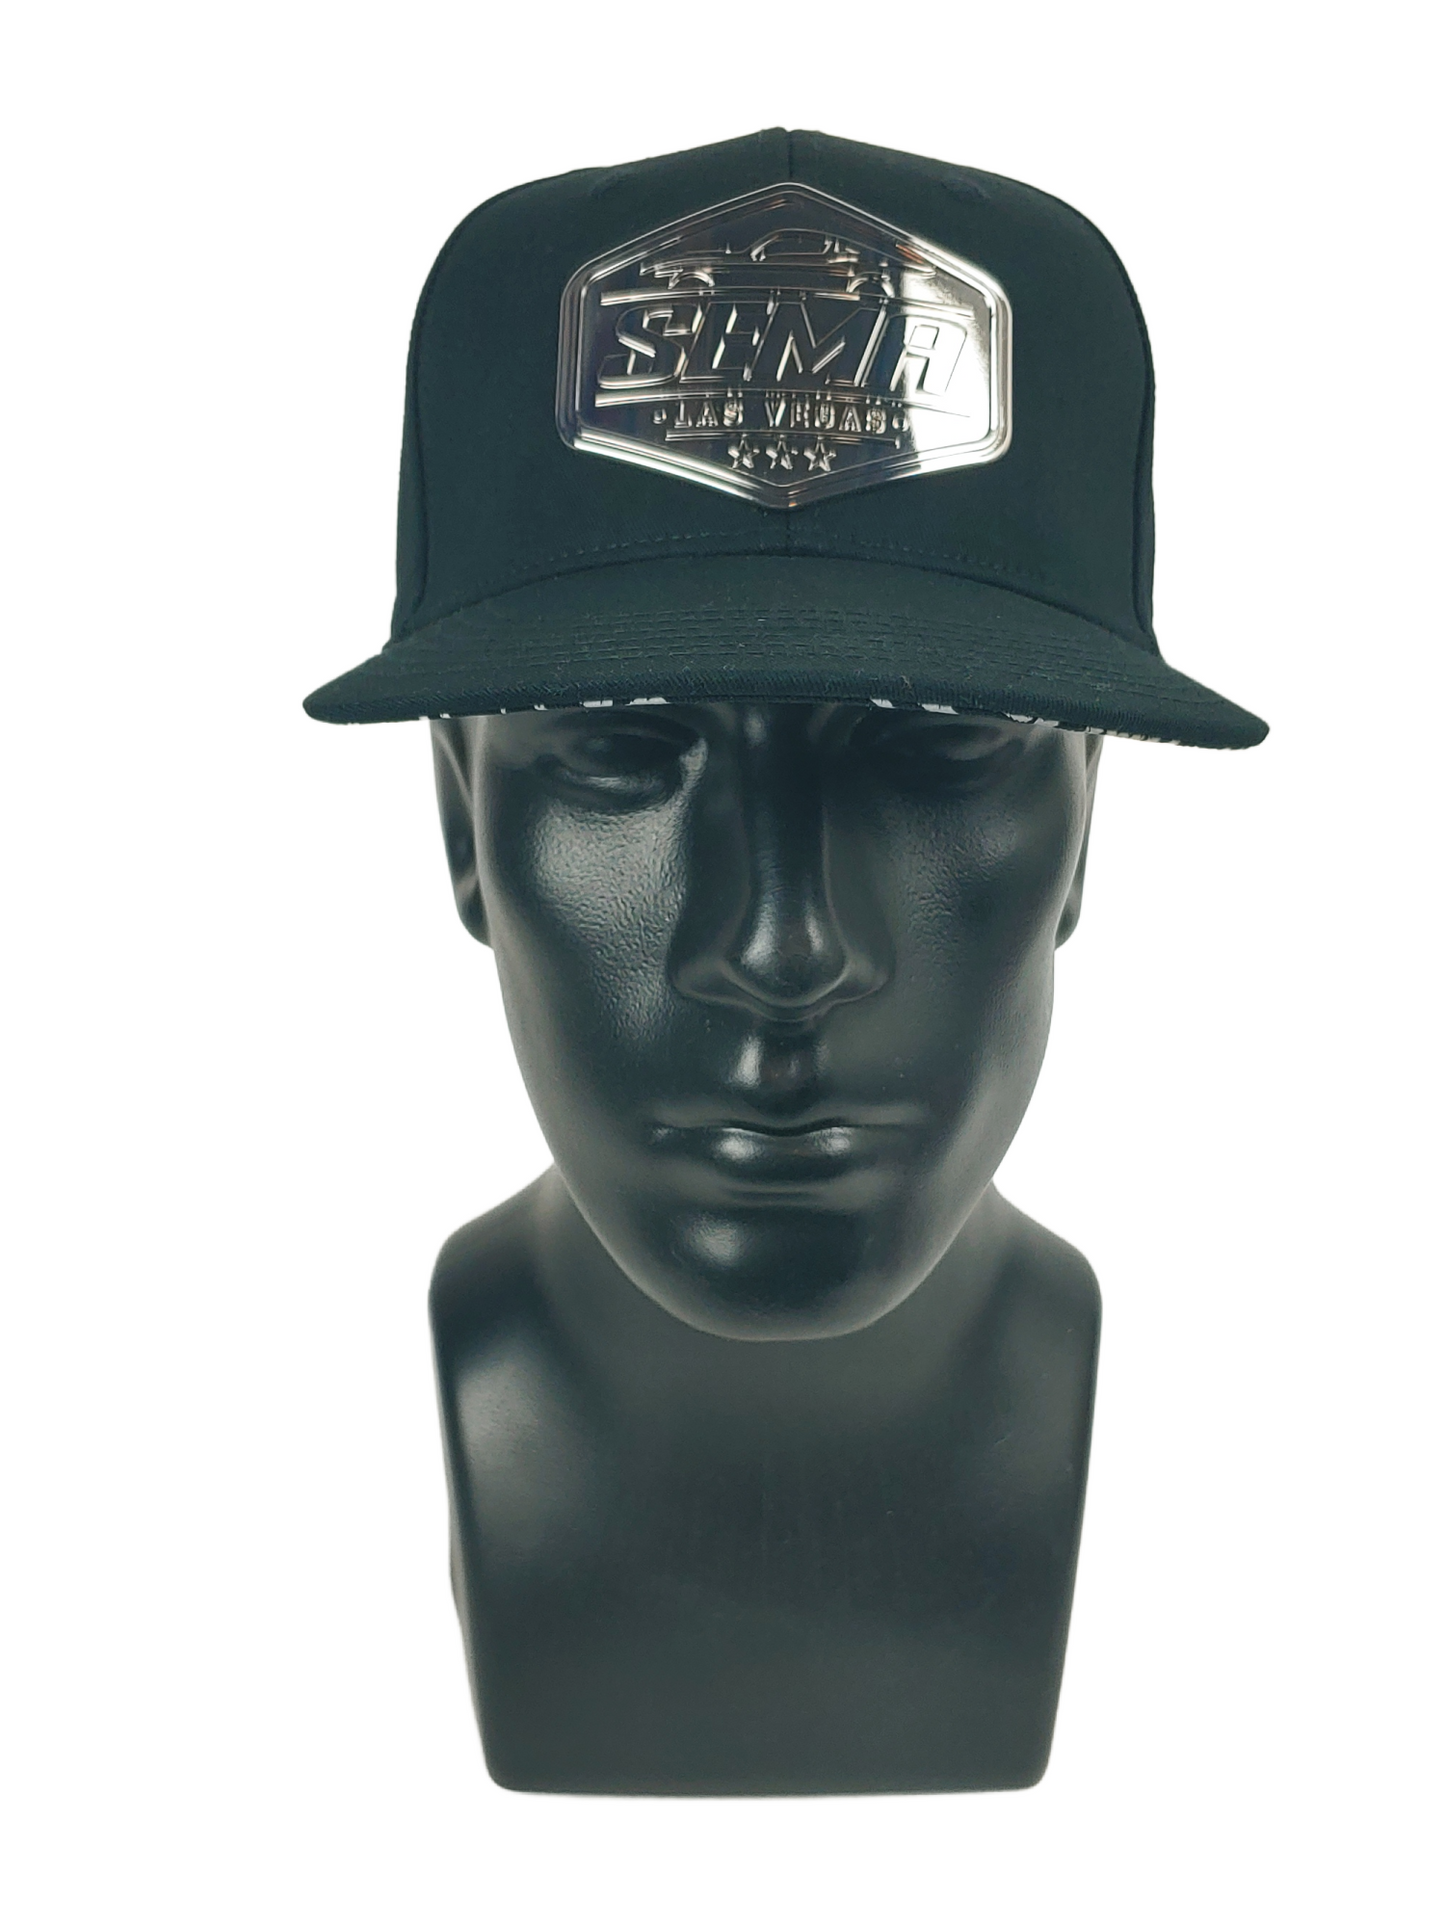 2023 SEMA Las Vegas - Special Metal Emblem - Trucker Hat